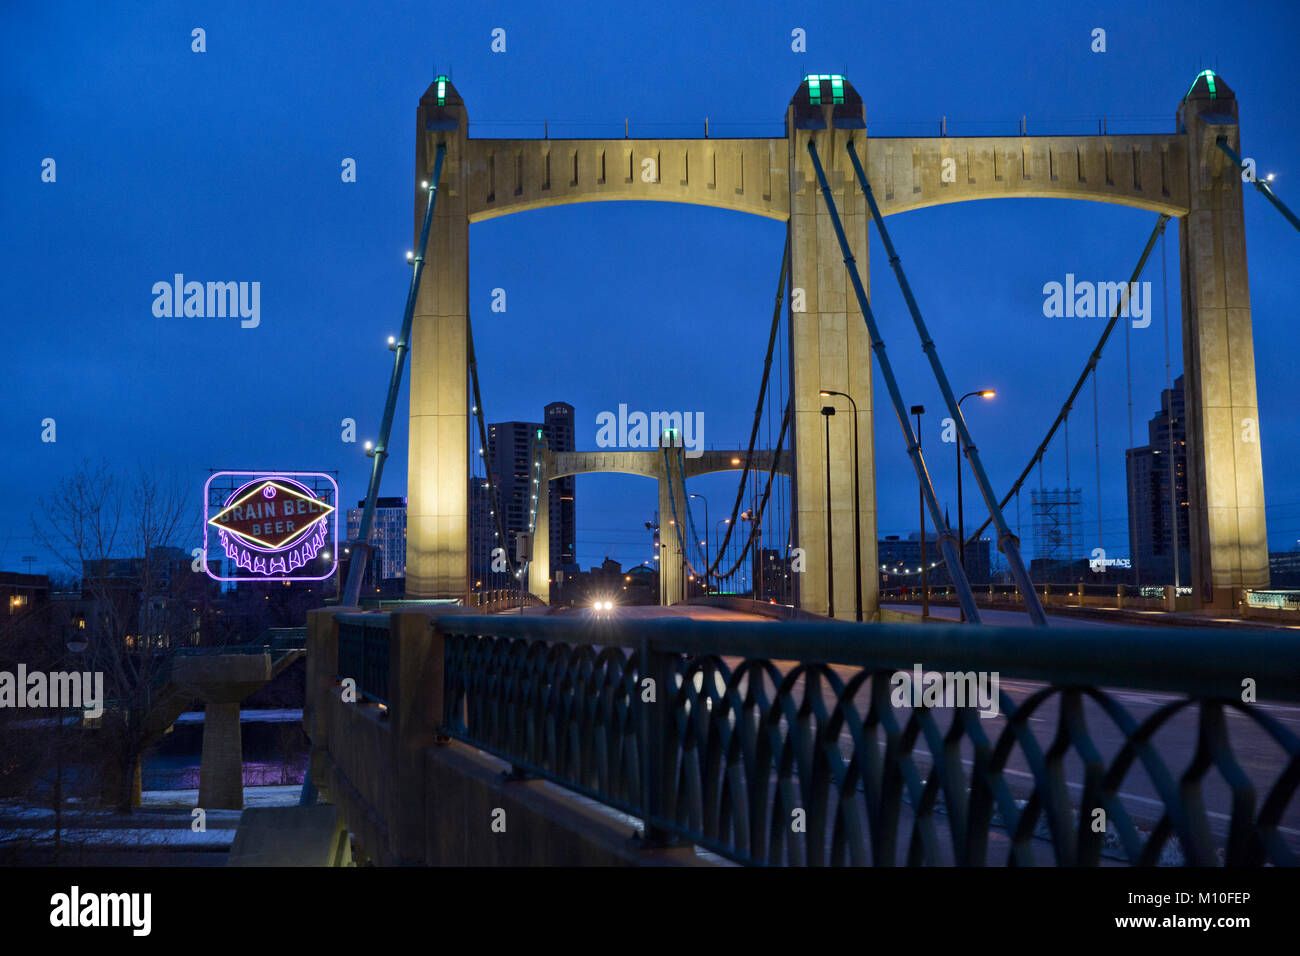 Hennepin Avenue Bridge und der legendäre Korn Gürtel Bier Schild in der Innenstadt von Minneapolis, MN - Die Brücke ist nach dem 17. Jahrhundert explorer Vater Louis benannt Stockfoto